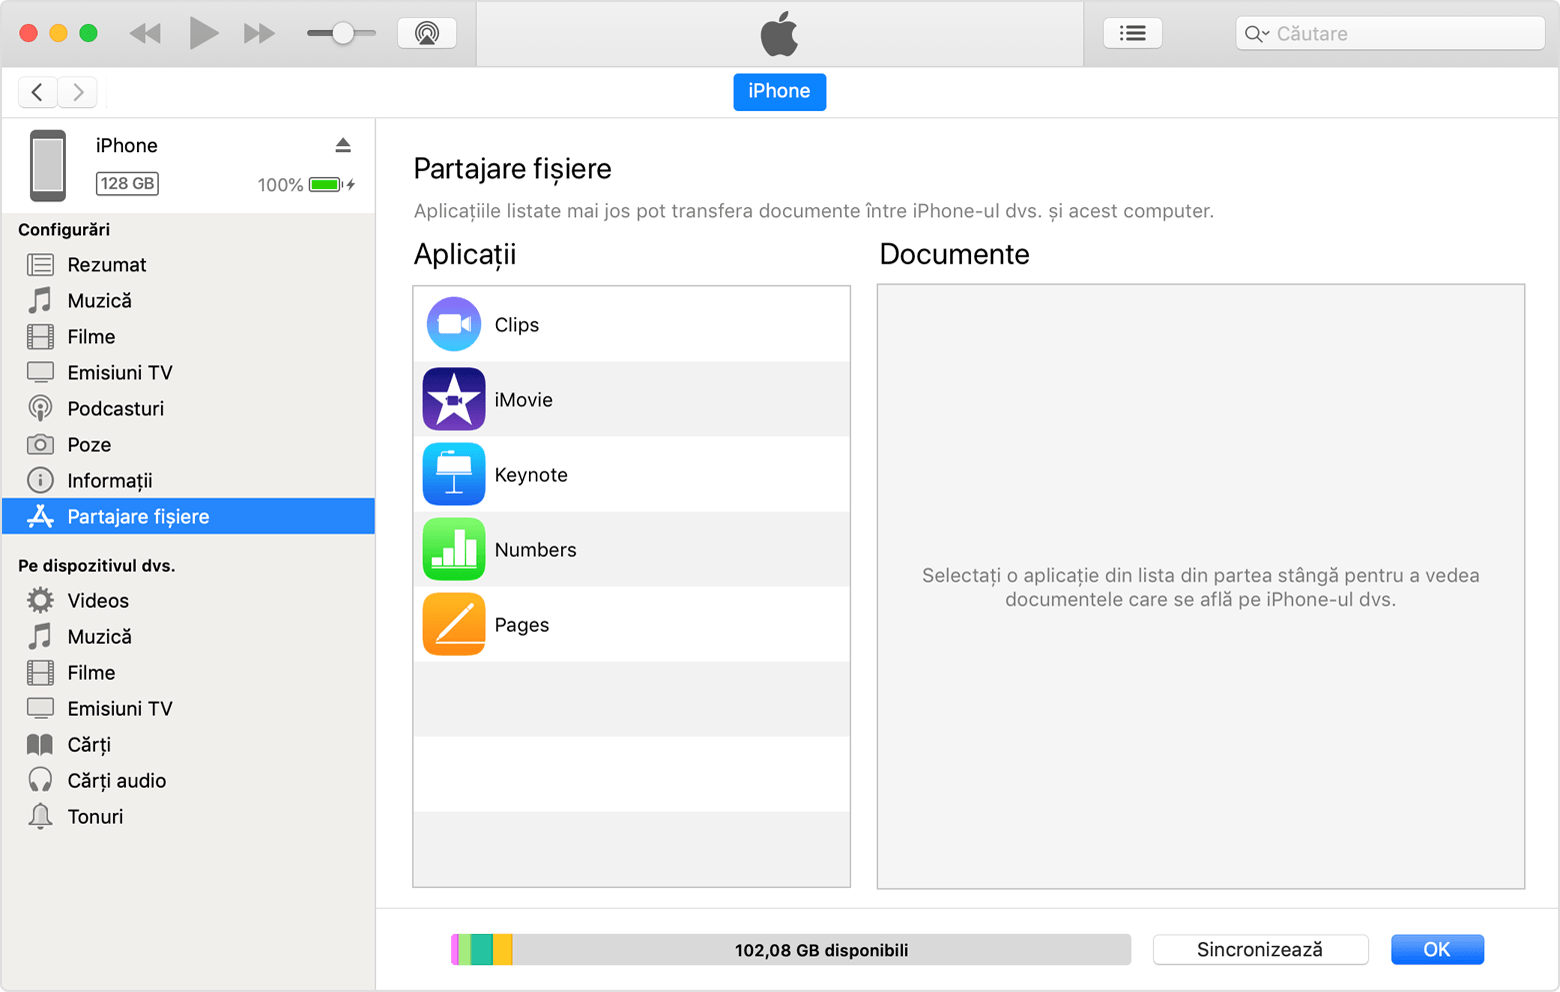 Fereastra iTunes cu dispozitivul iPhone conectat și funcția Partajare fișiere selectată în listă.